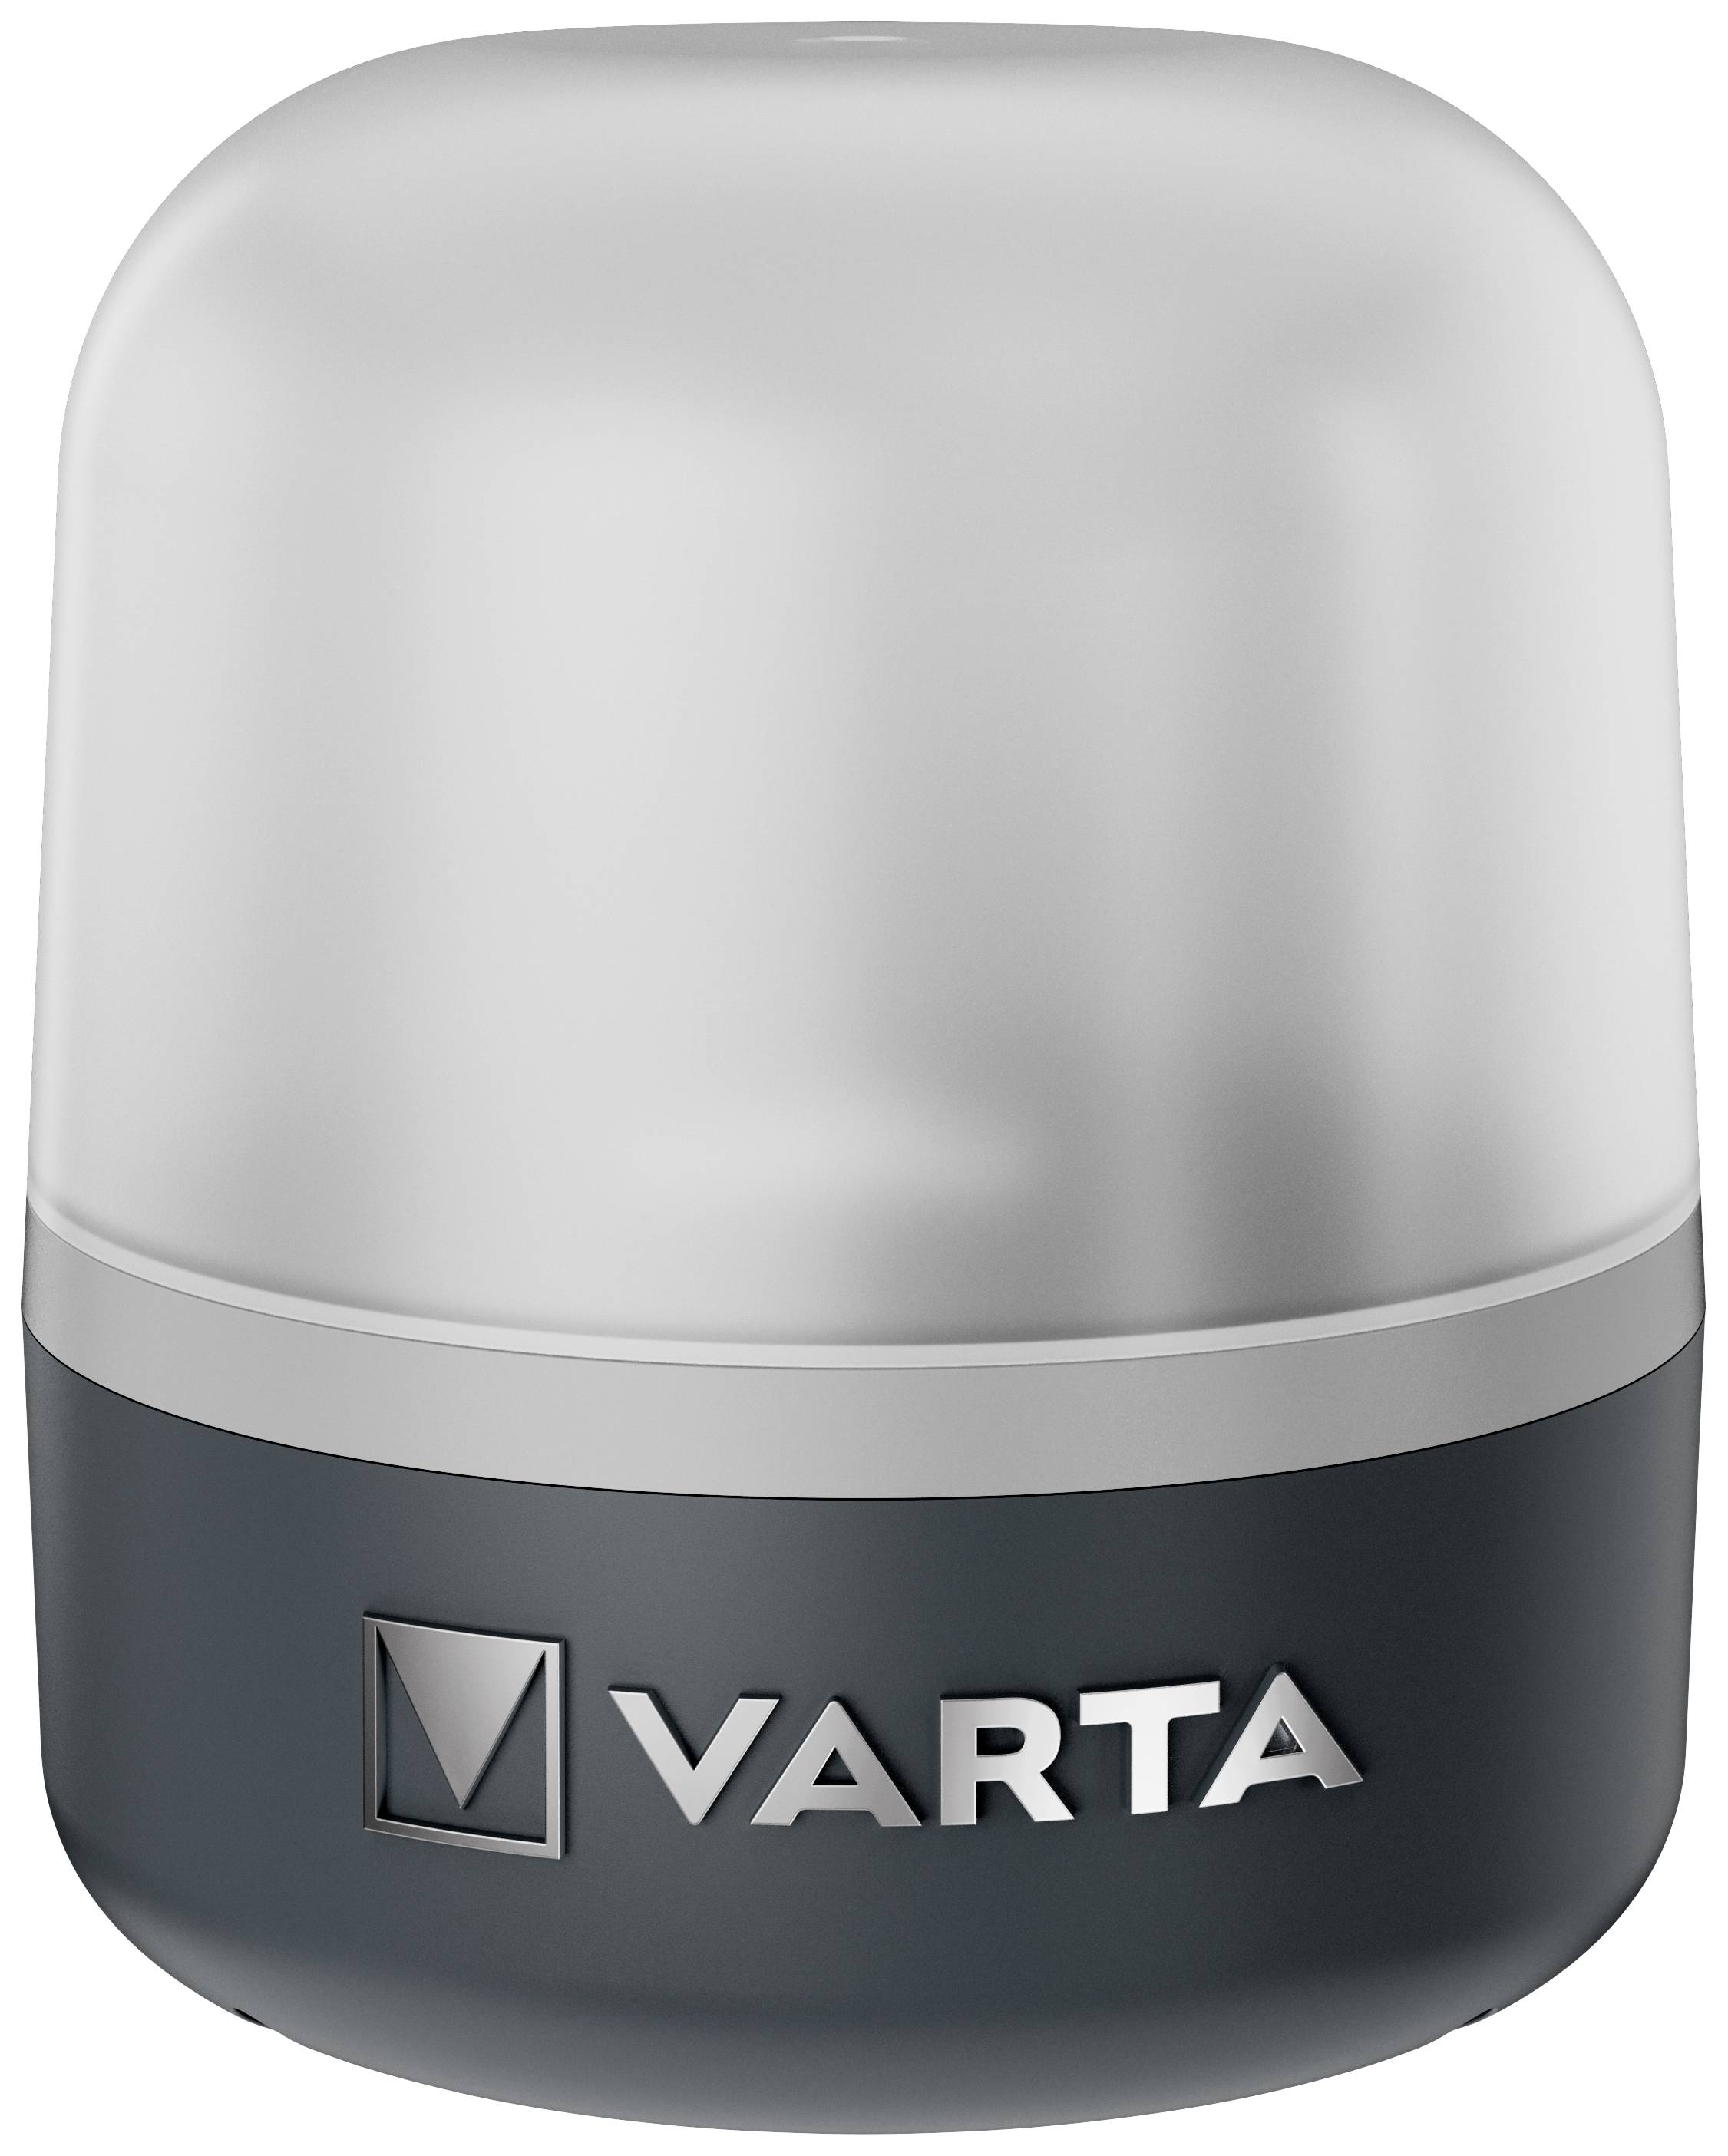 VARTA Laterne Dynamo Lantern mit Kurbel zum Aufladen